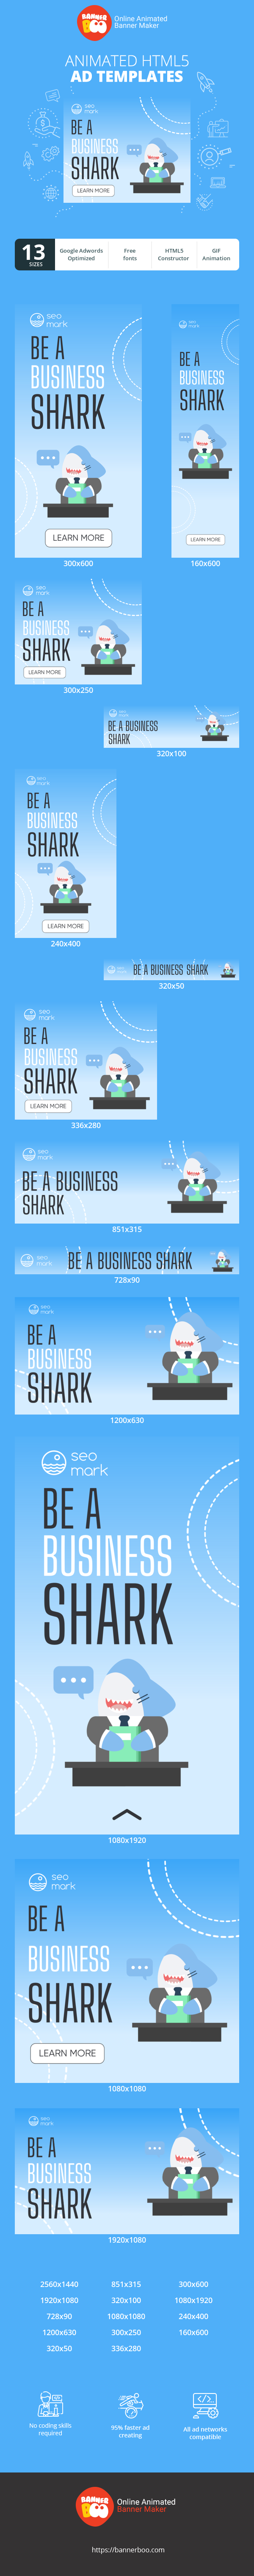 Шаблон рекламного банера — Be A Shark — Business